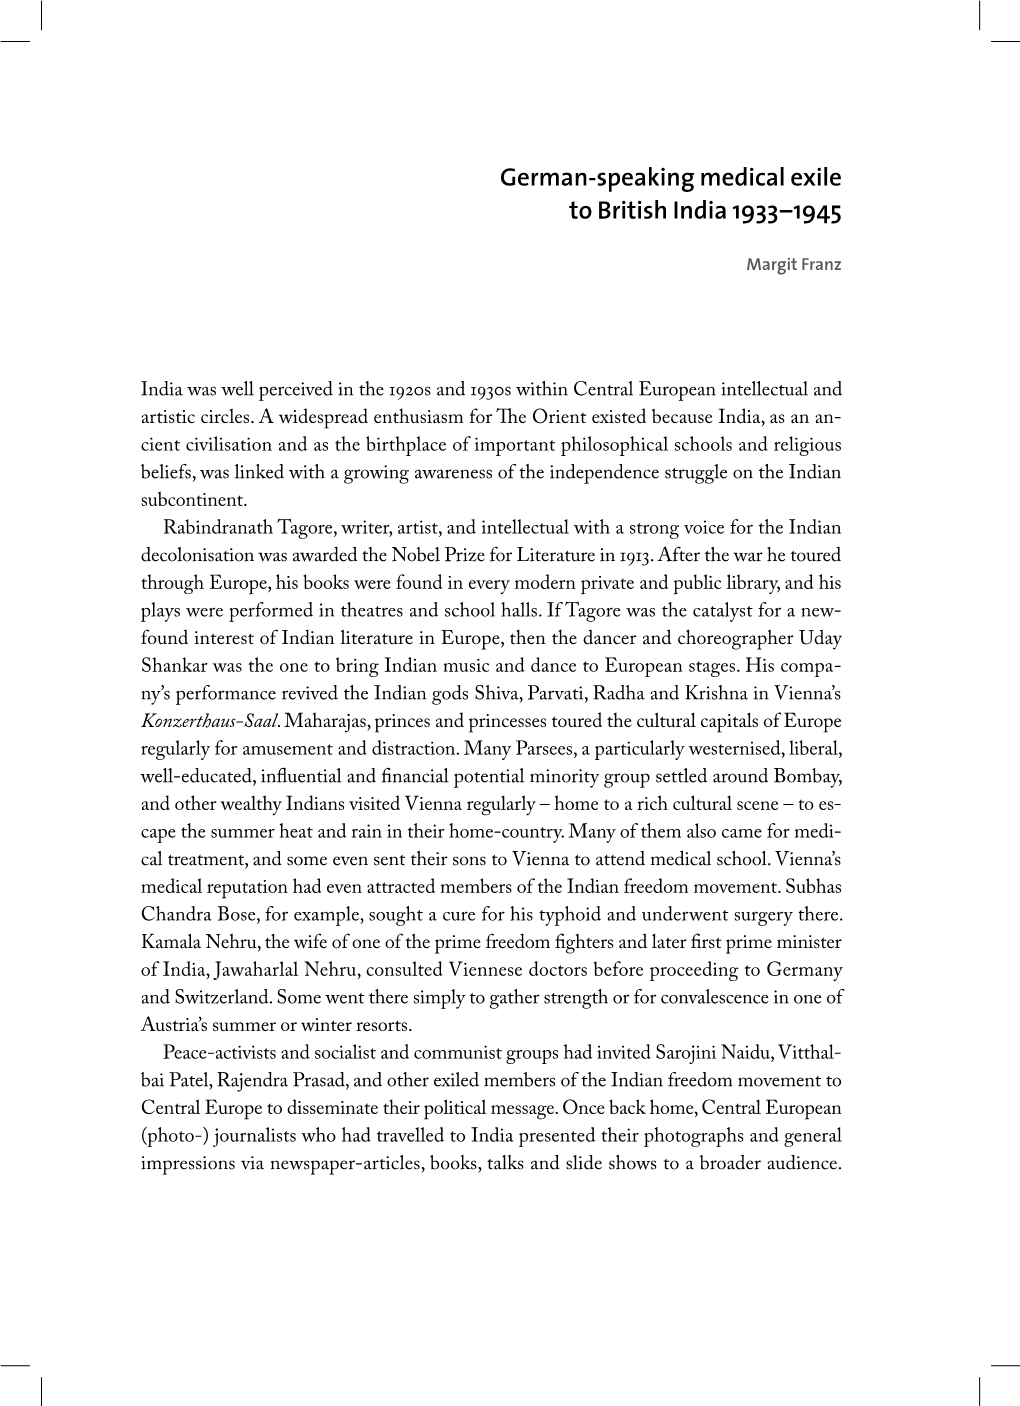 German-Speaking Medical Exile to British India 1933–1945